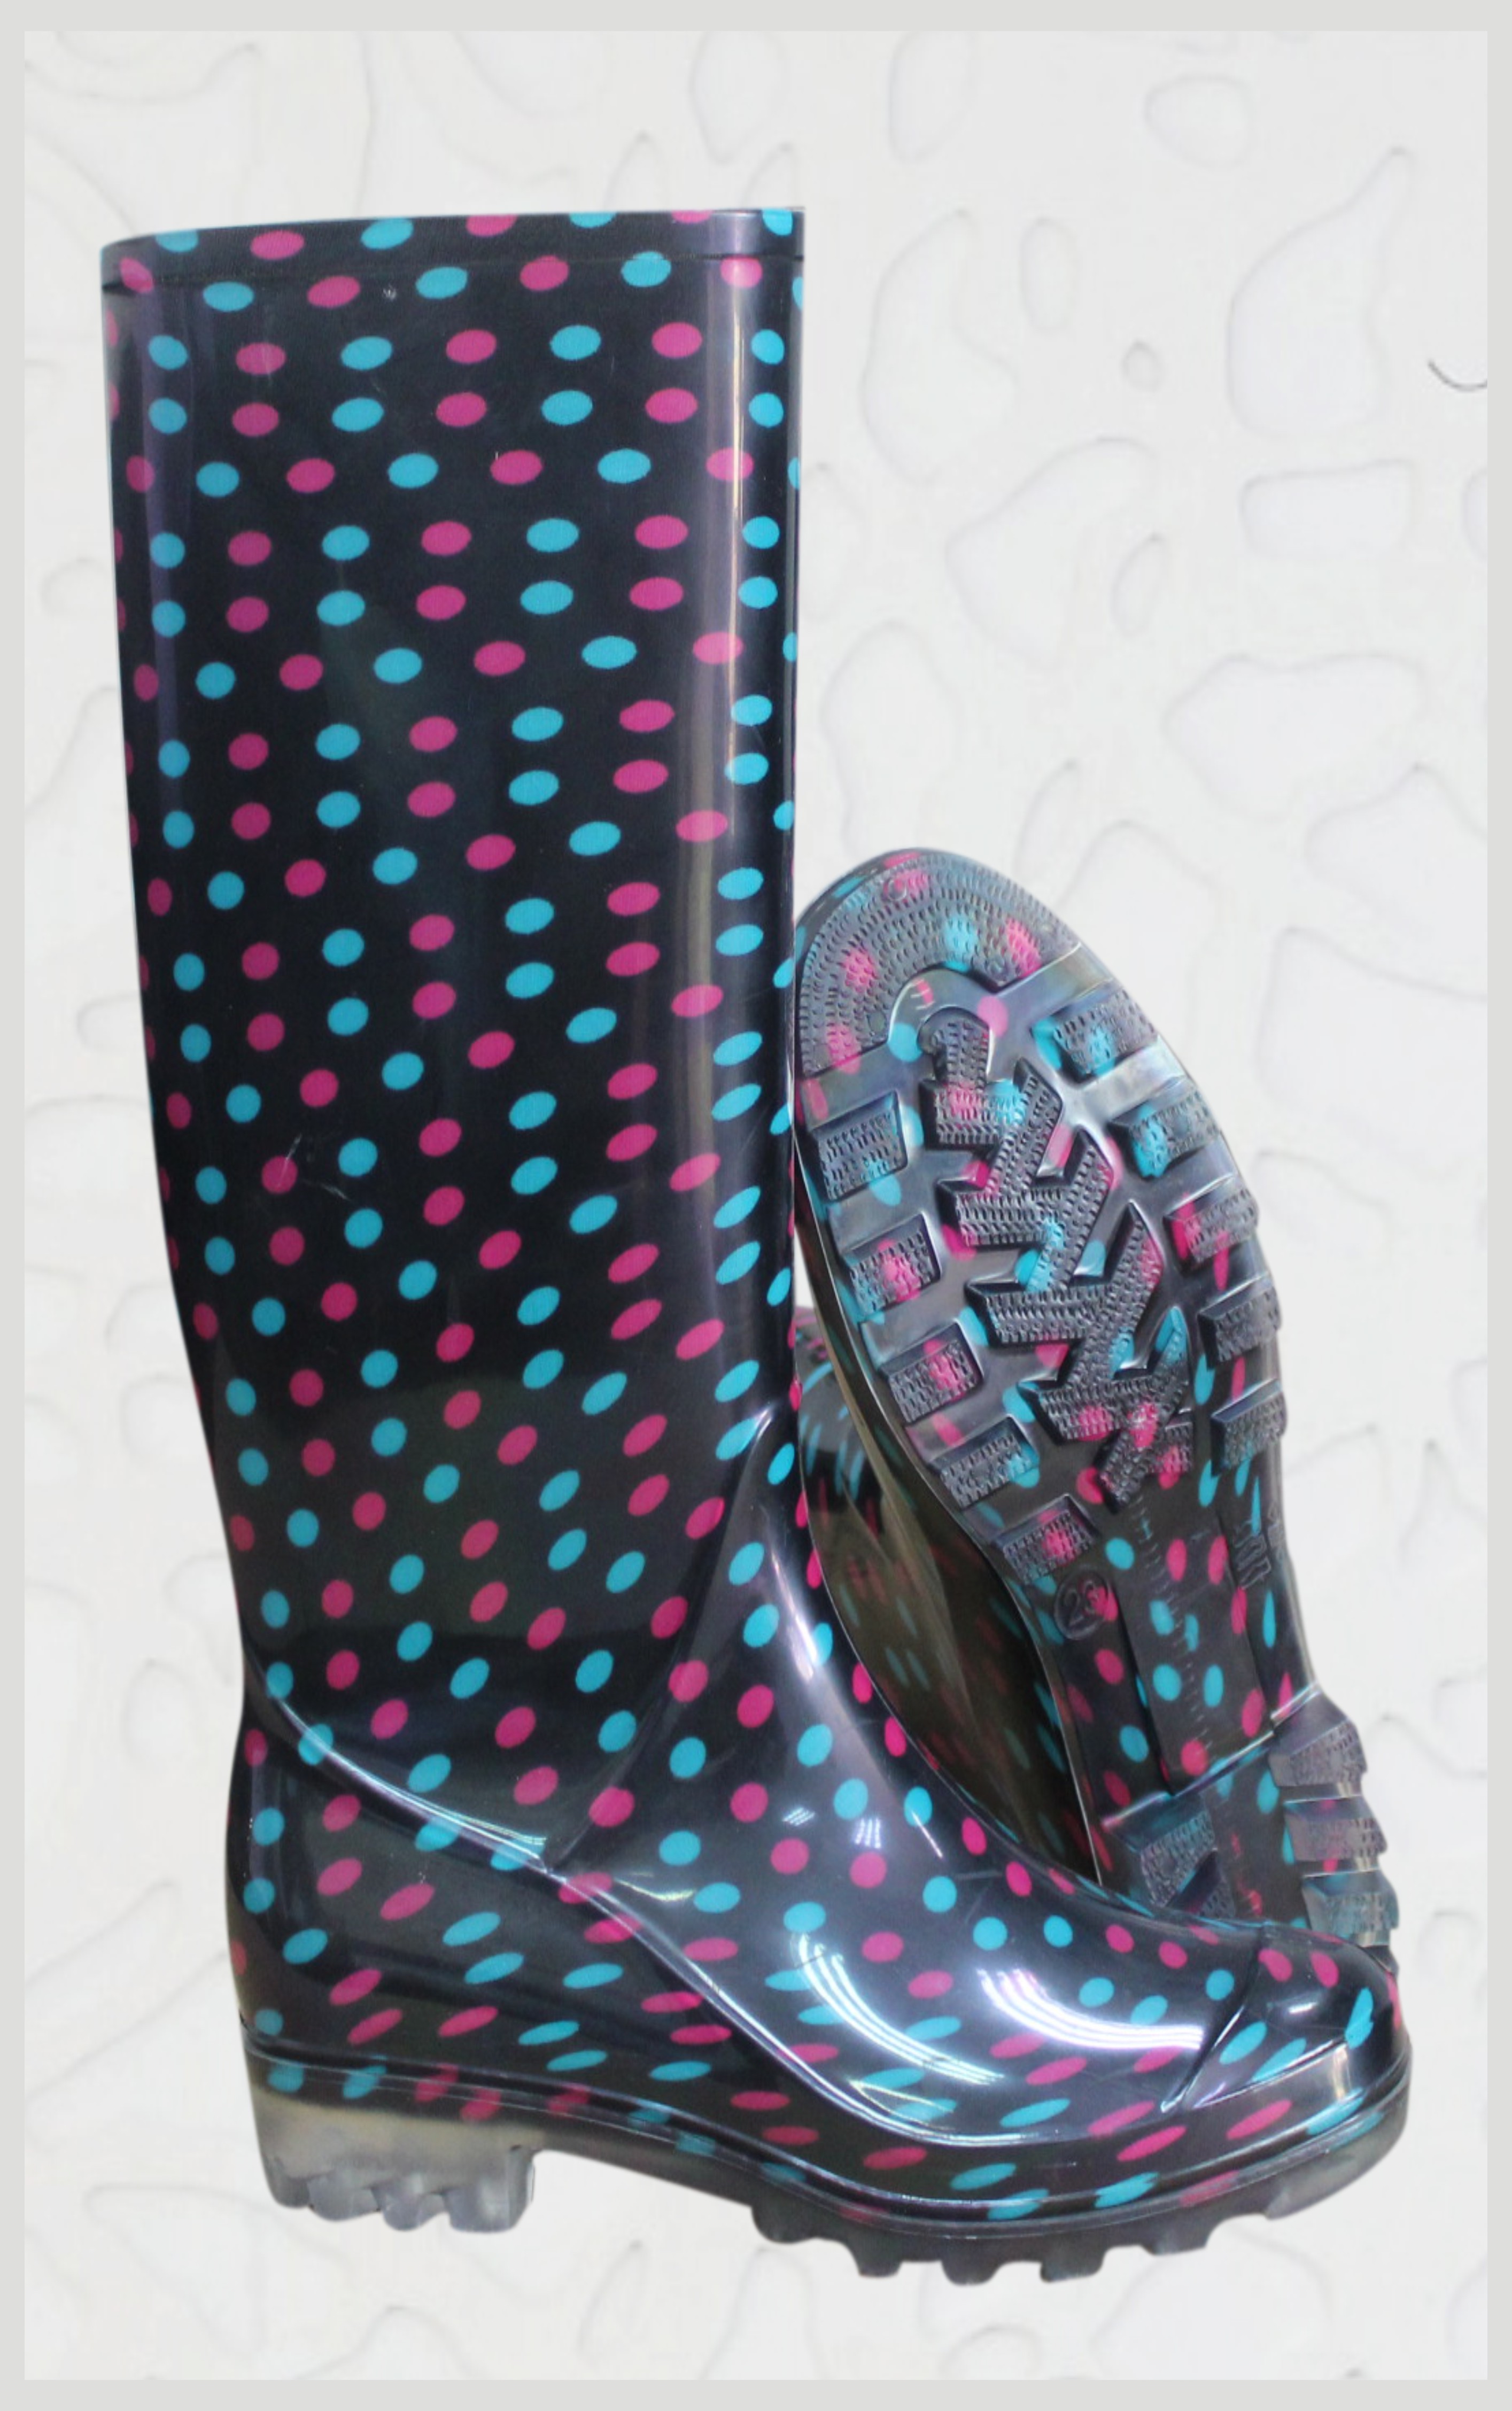 供应AN202女雨鞋厂家直销时尚靓丽女式雨鞋款式新颖花色多样量大价优 AN202女雨鞋